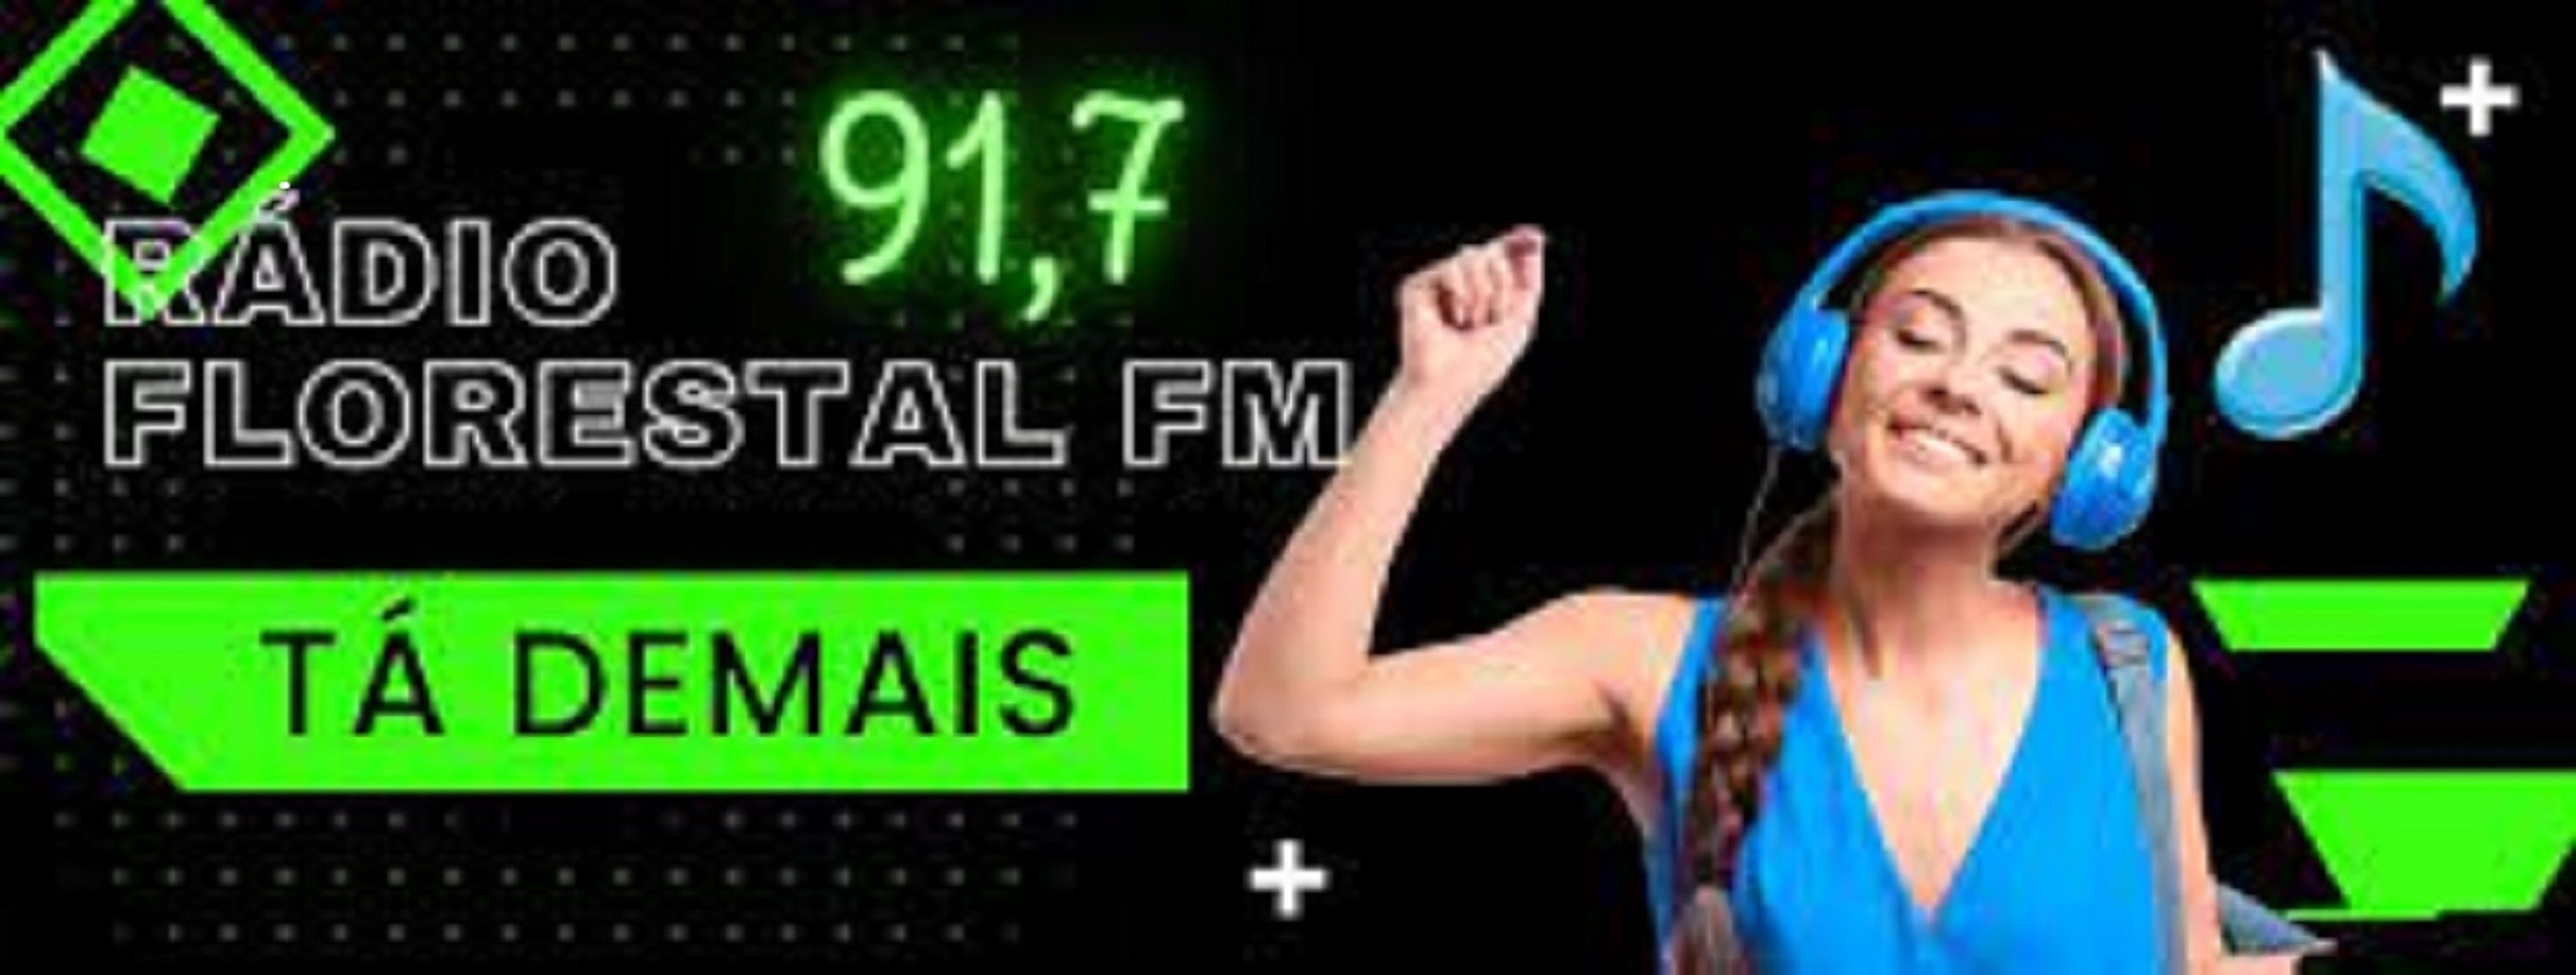 Radio Florestal Fm - música, informação e credibilidade